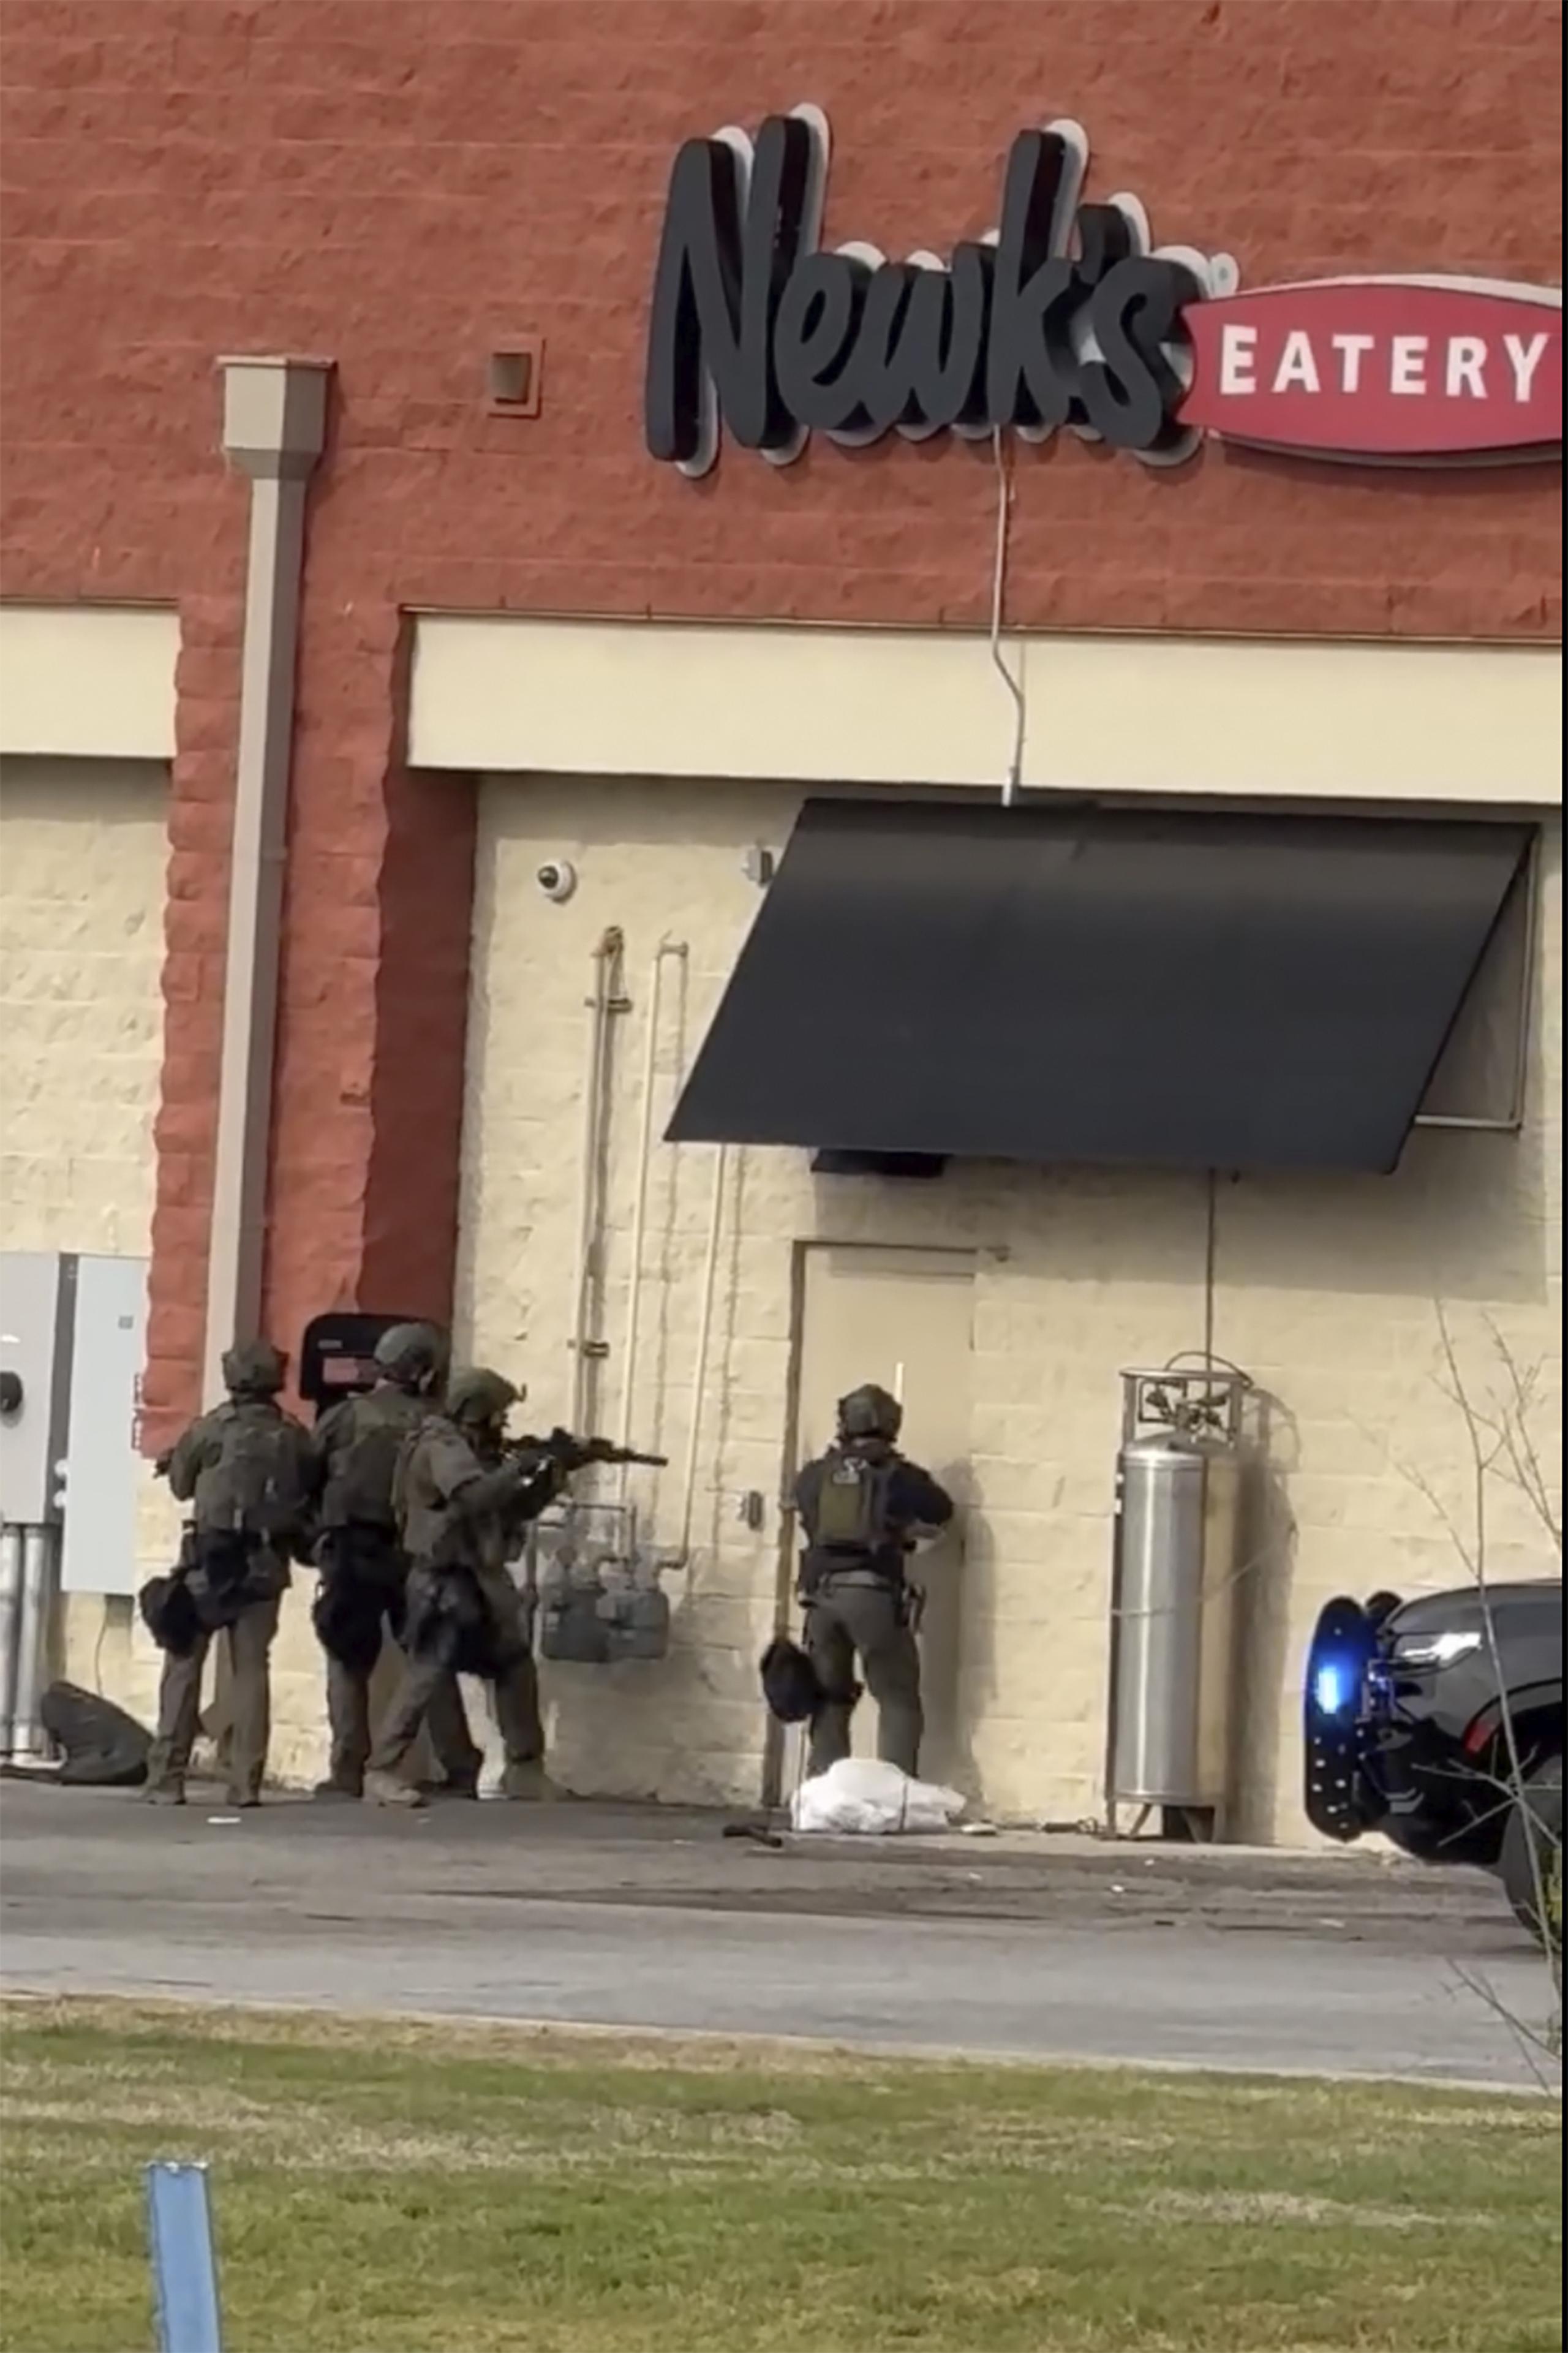 La Policía respondiendo al incidente en el Lewis Crossing Shopping Center, en Conway, Arkansas. Foto cedida por Tamekah Michelle.